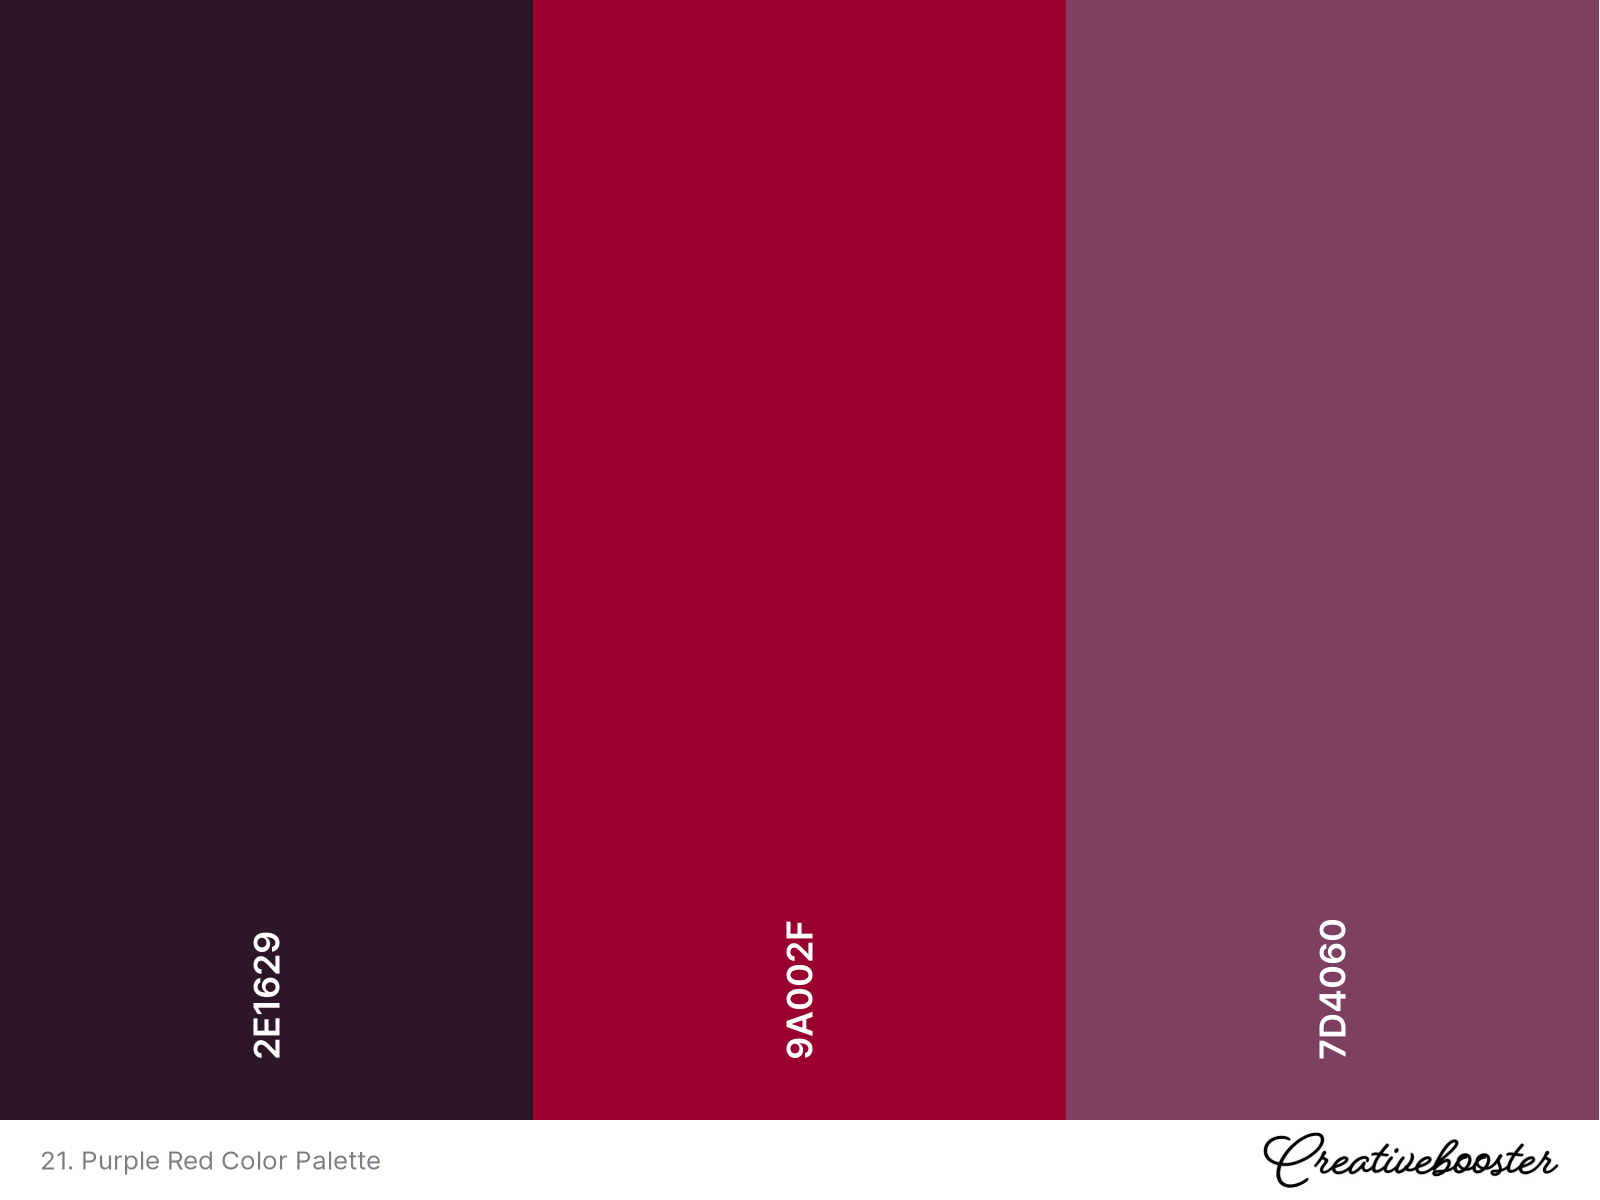 21. Purple Red Color Palette